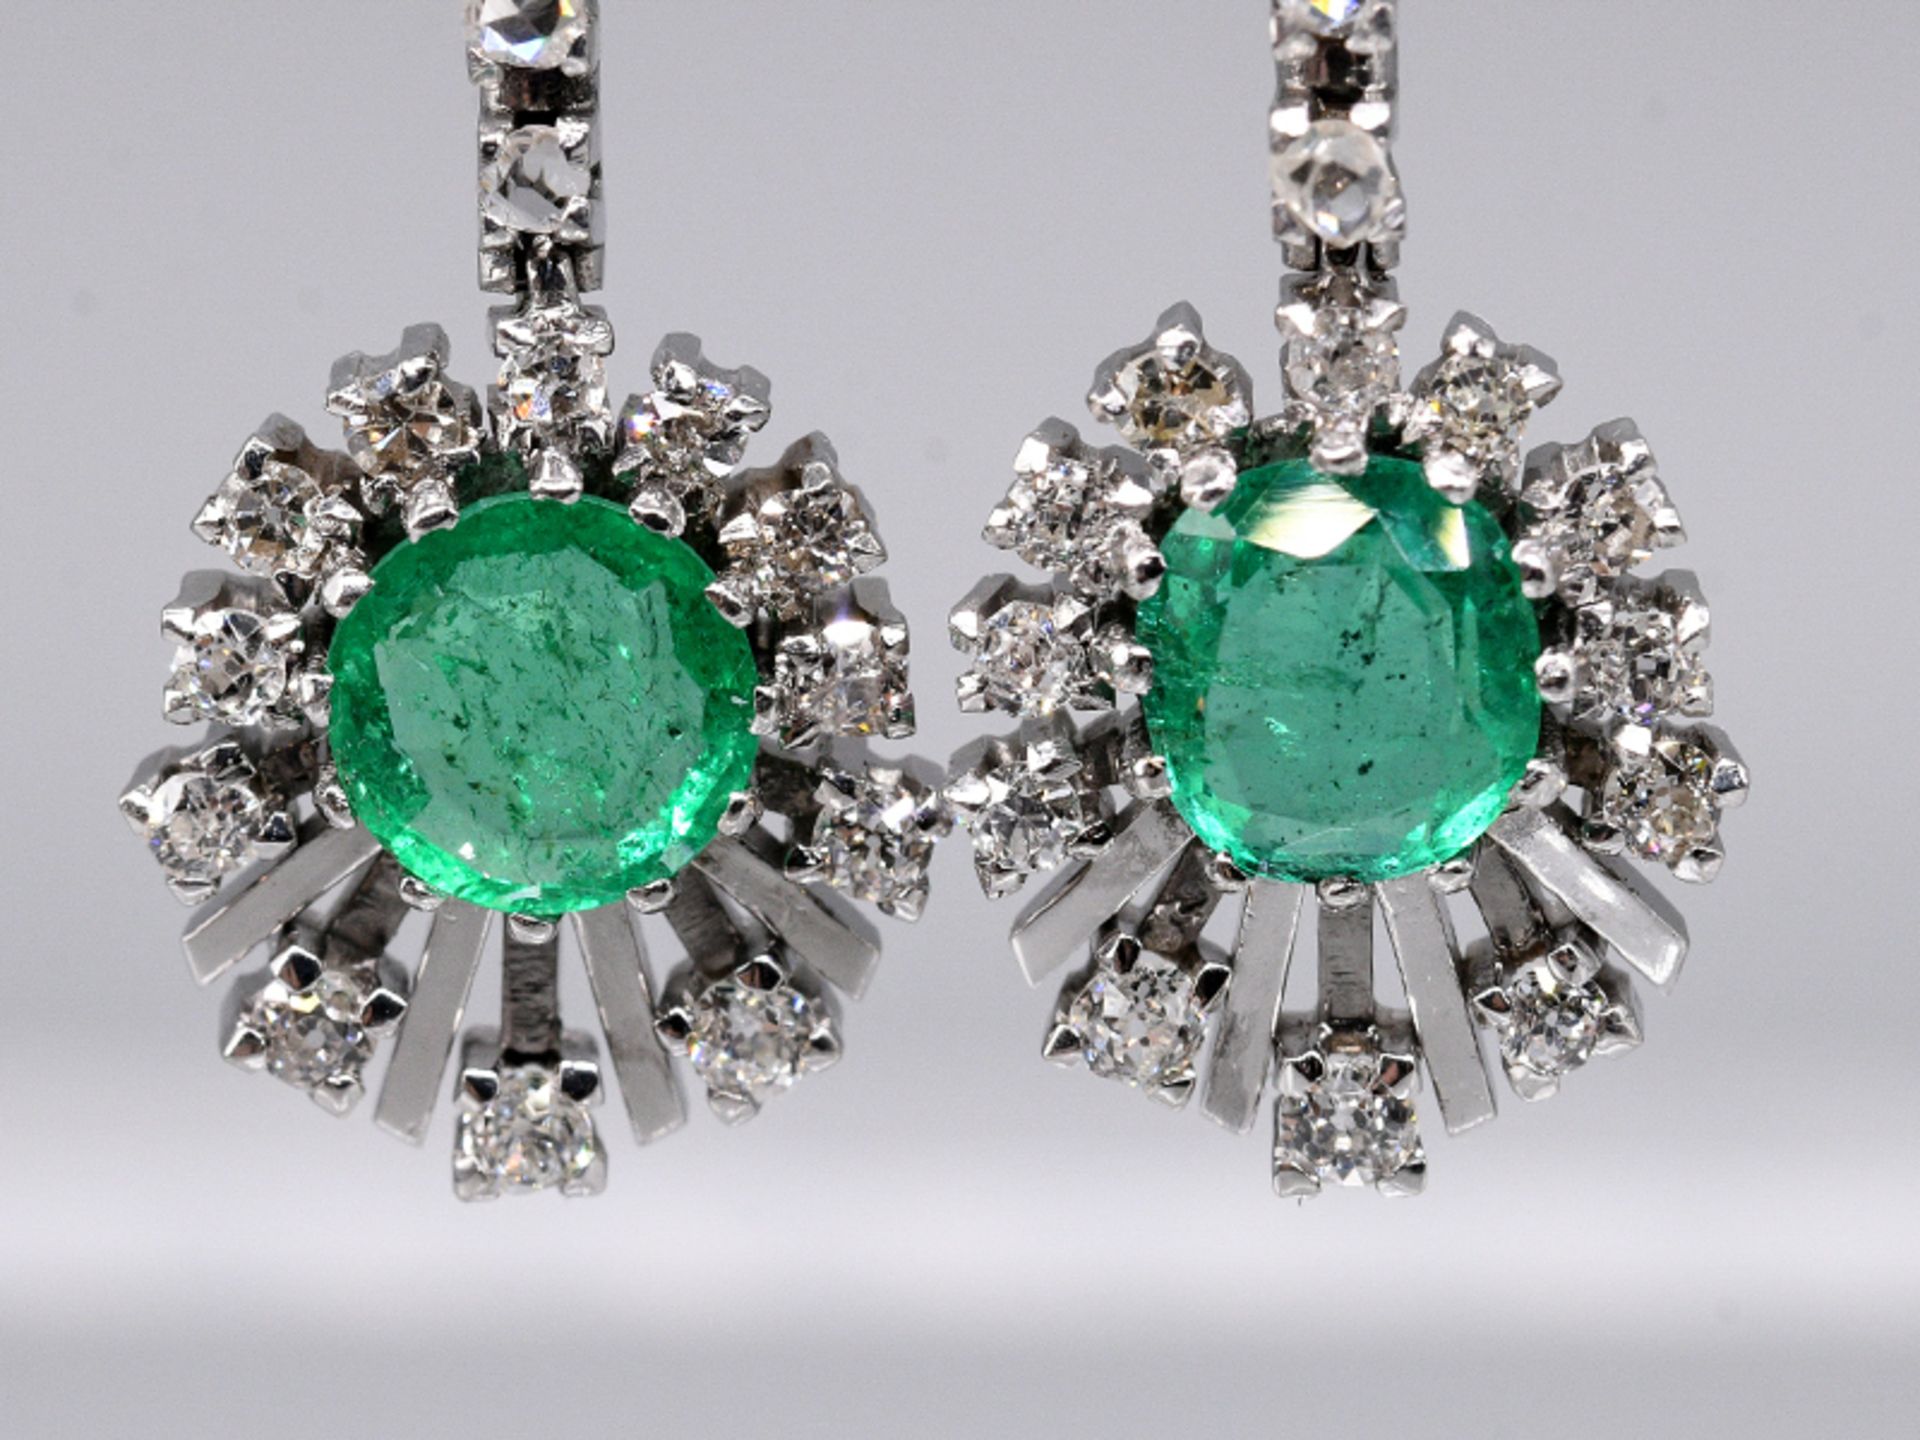 Paar Ohrgehänge mit 4 Smaragden, zus. ca. 2-2,5 ct und 36 Diamanten, zus. ca. 0,7 ct, 80- er Jahre - Bild 2 aus 5